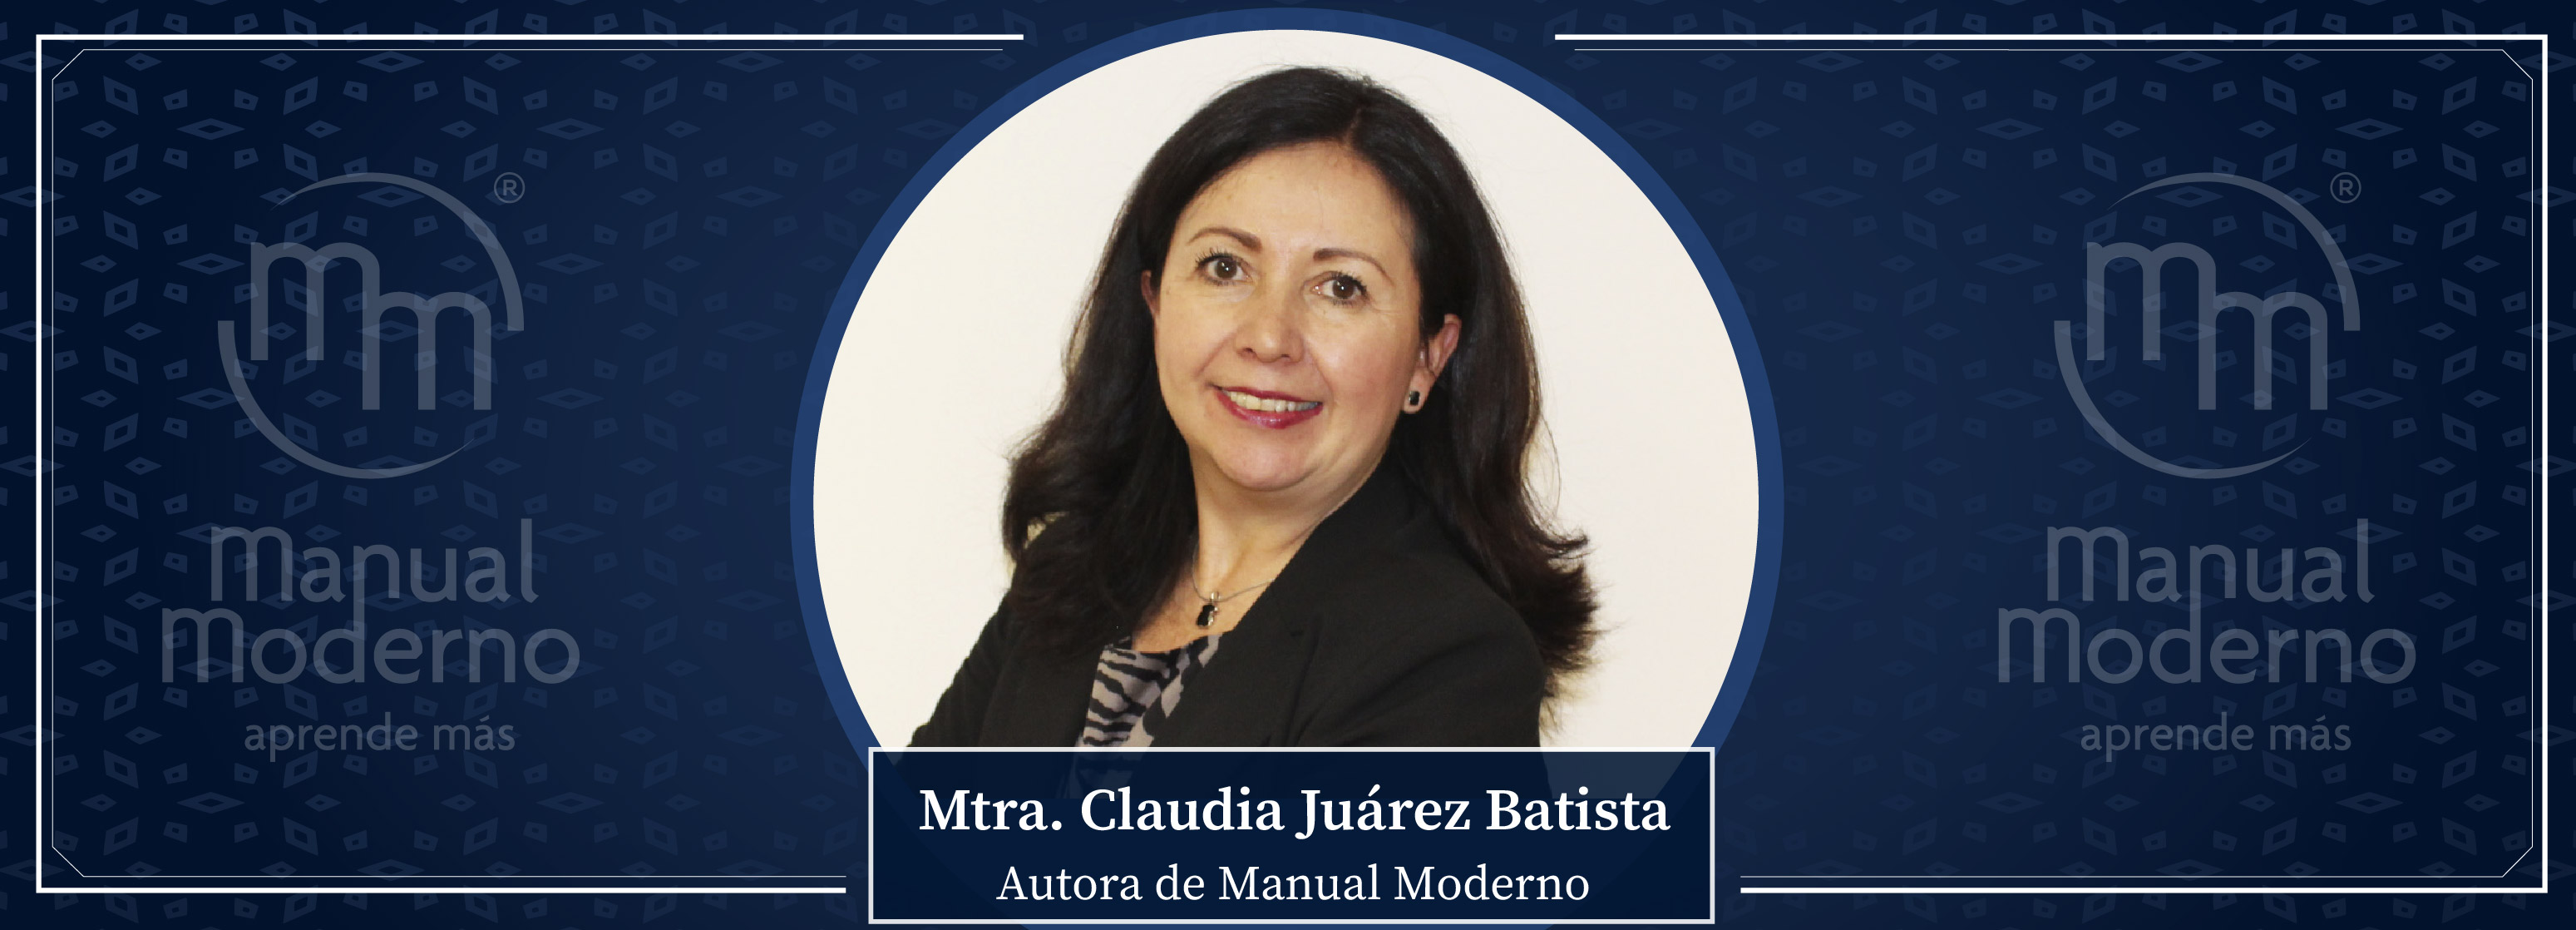 Nuestros Autores. Mtra. Claudia Juárez Batista